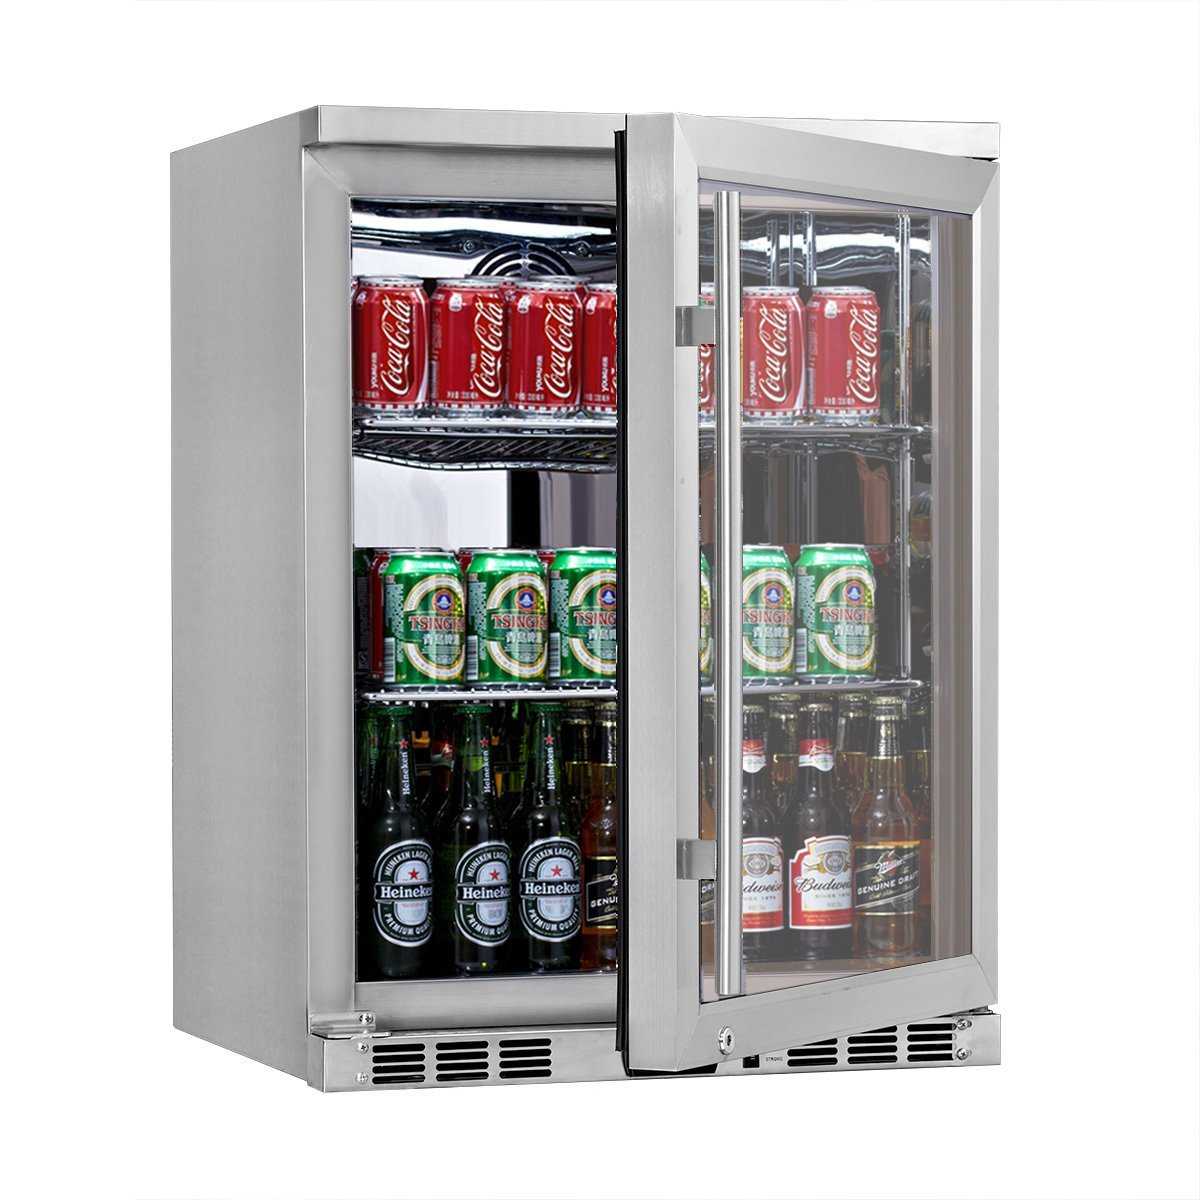 KingsBottle KBU55M 24 Inch Under Counter Beer Cooler Drinks Stainless Steel